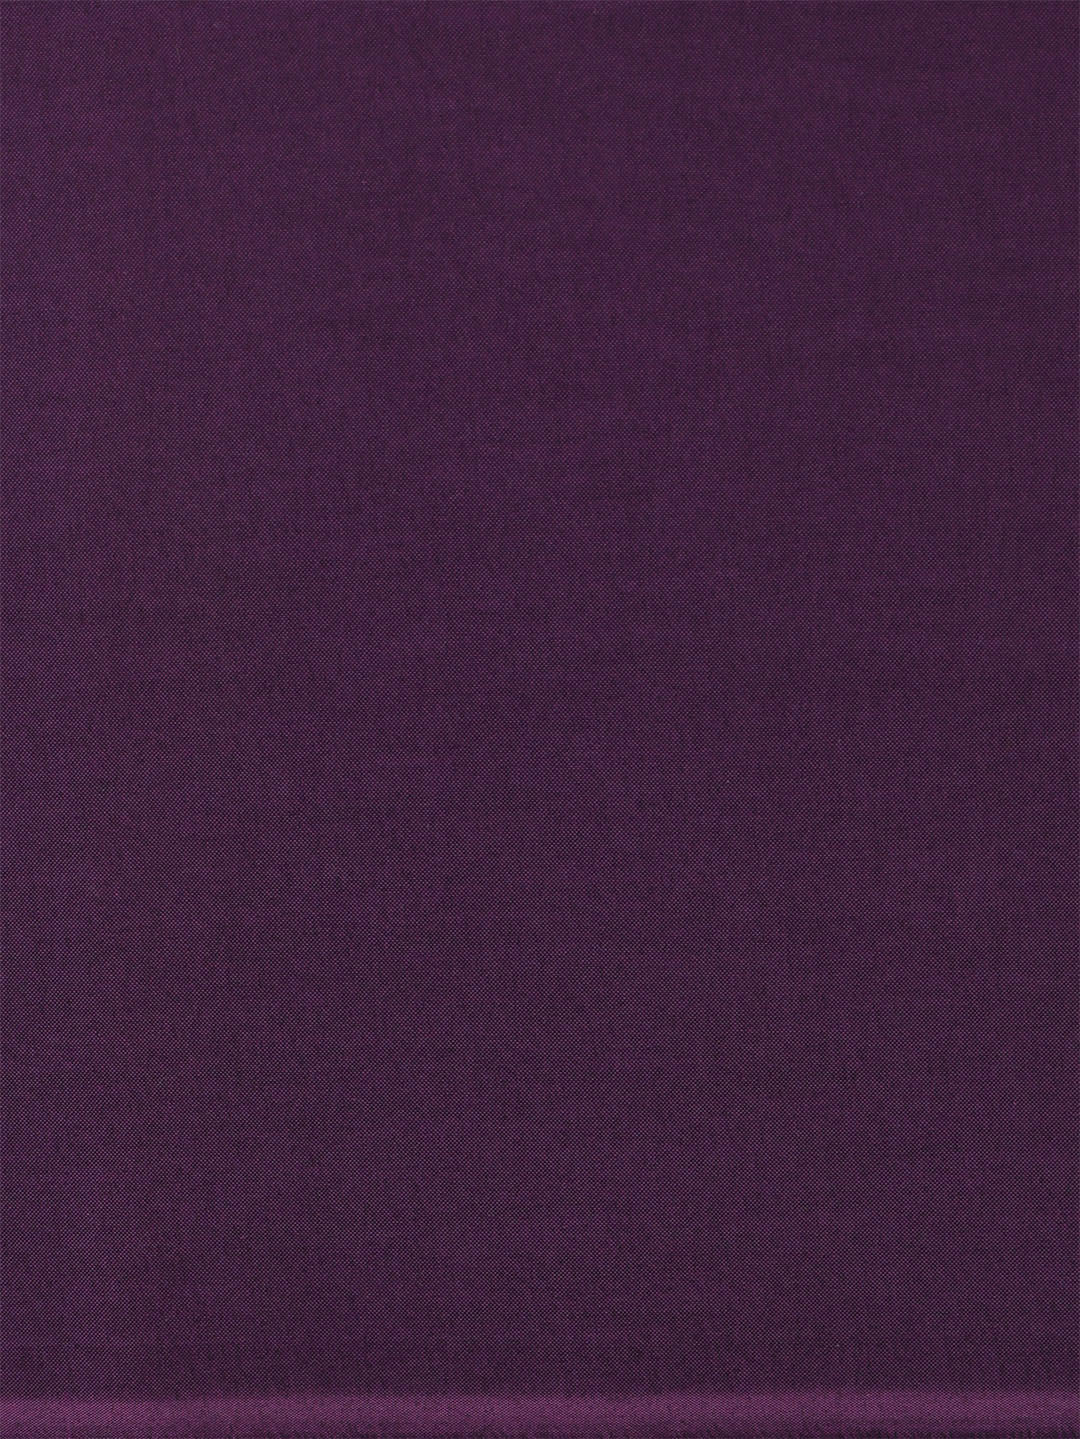 Cotton Blend Violet Colour Plain Shirt Fabric Infinity